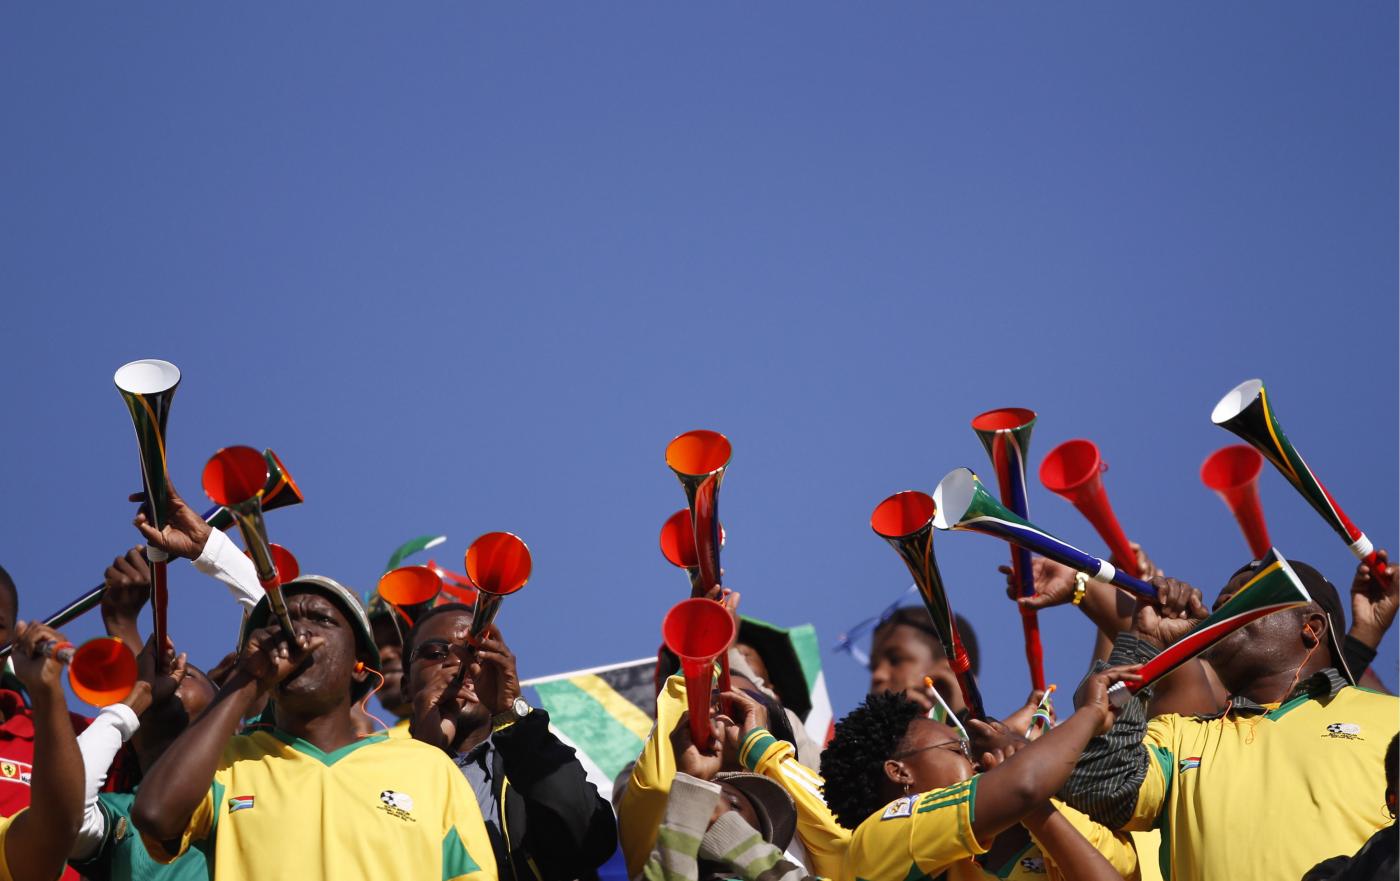 Amichevole, Sudafrica-Angola mercoledì 19 giugno: analisi e pronostico della gara amichevole tra le due selezioni africane